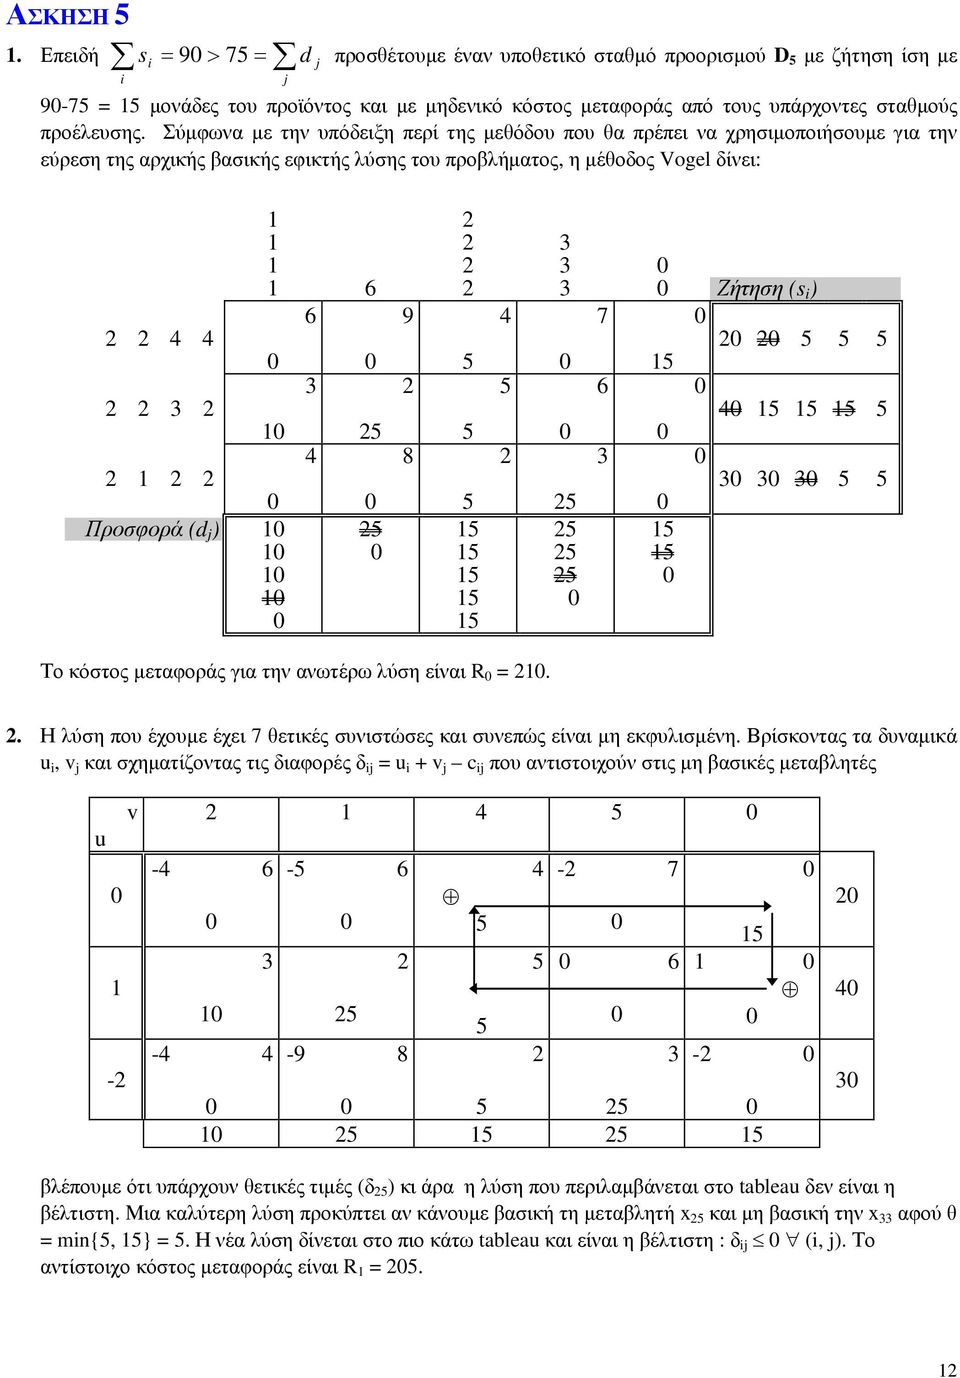 Σύμφωνα με την υπόδειξη περί της μεθόδου που θα πρέπει να χρησιμοποιήσουμε για την εύρεση της αρχικής βασικής εφικτής λύσης του προβλήματος, η μέθοδος Vogel δίνει: 4 4 3 Προσφορά (d ) 3 3 6 3 Ζήτηση